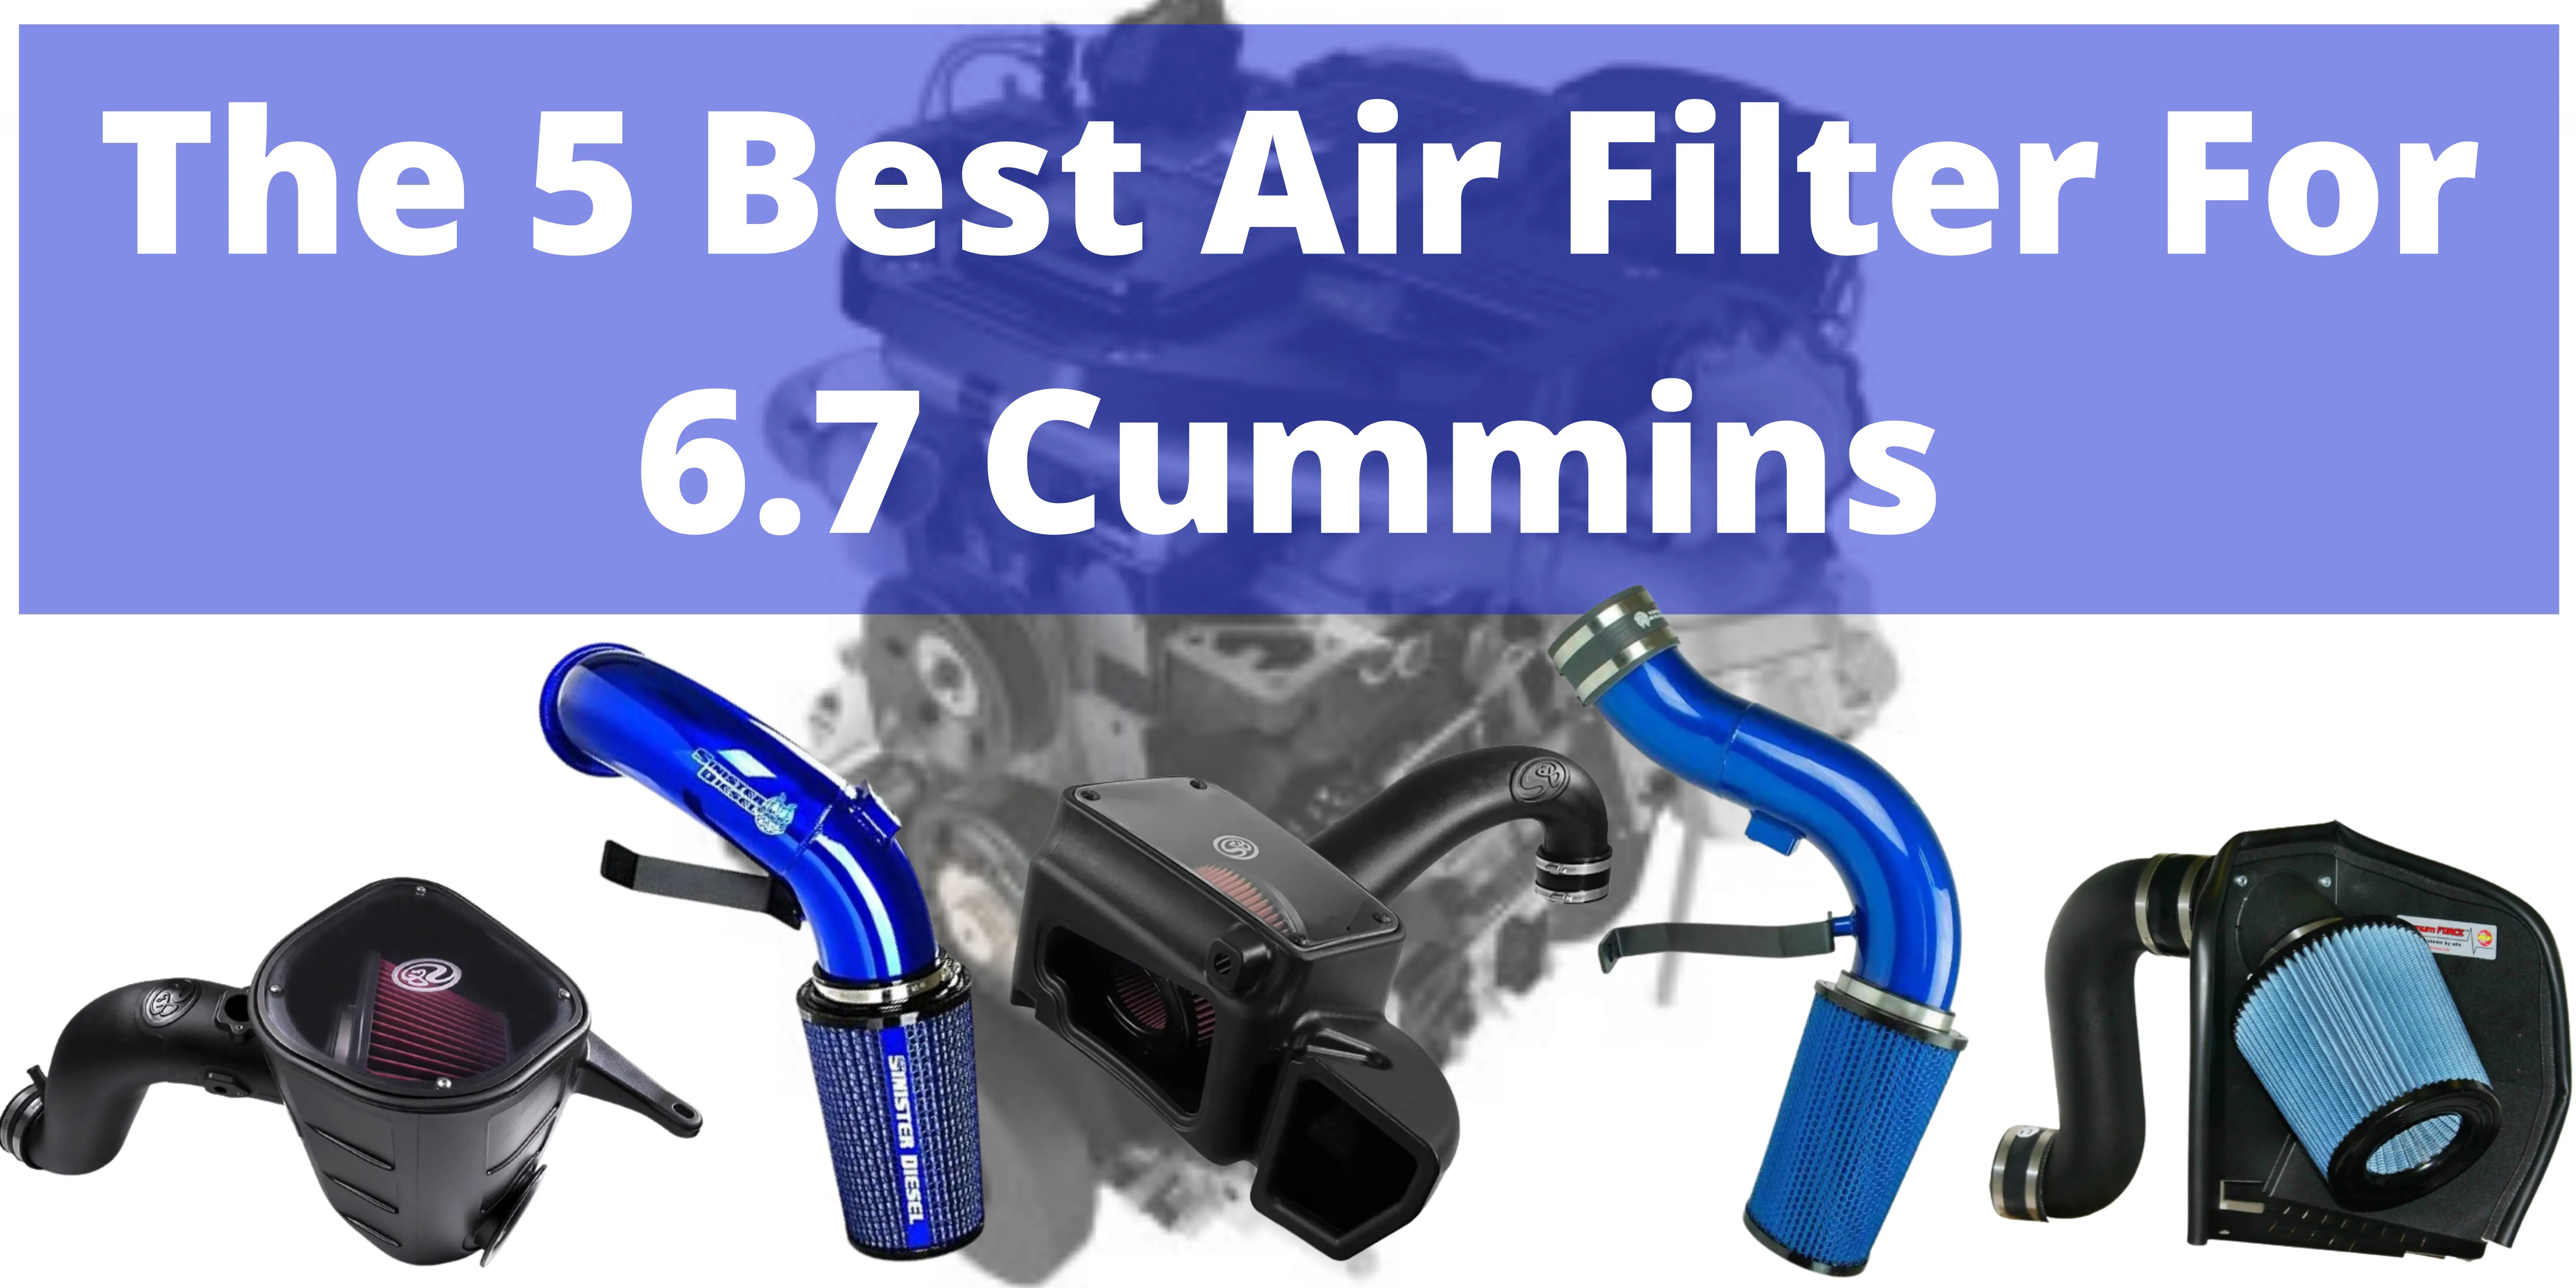 Best Air Filter for 6.7 Cummins